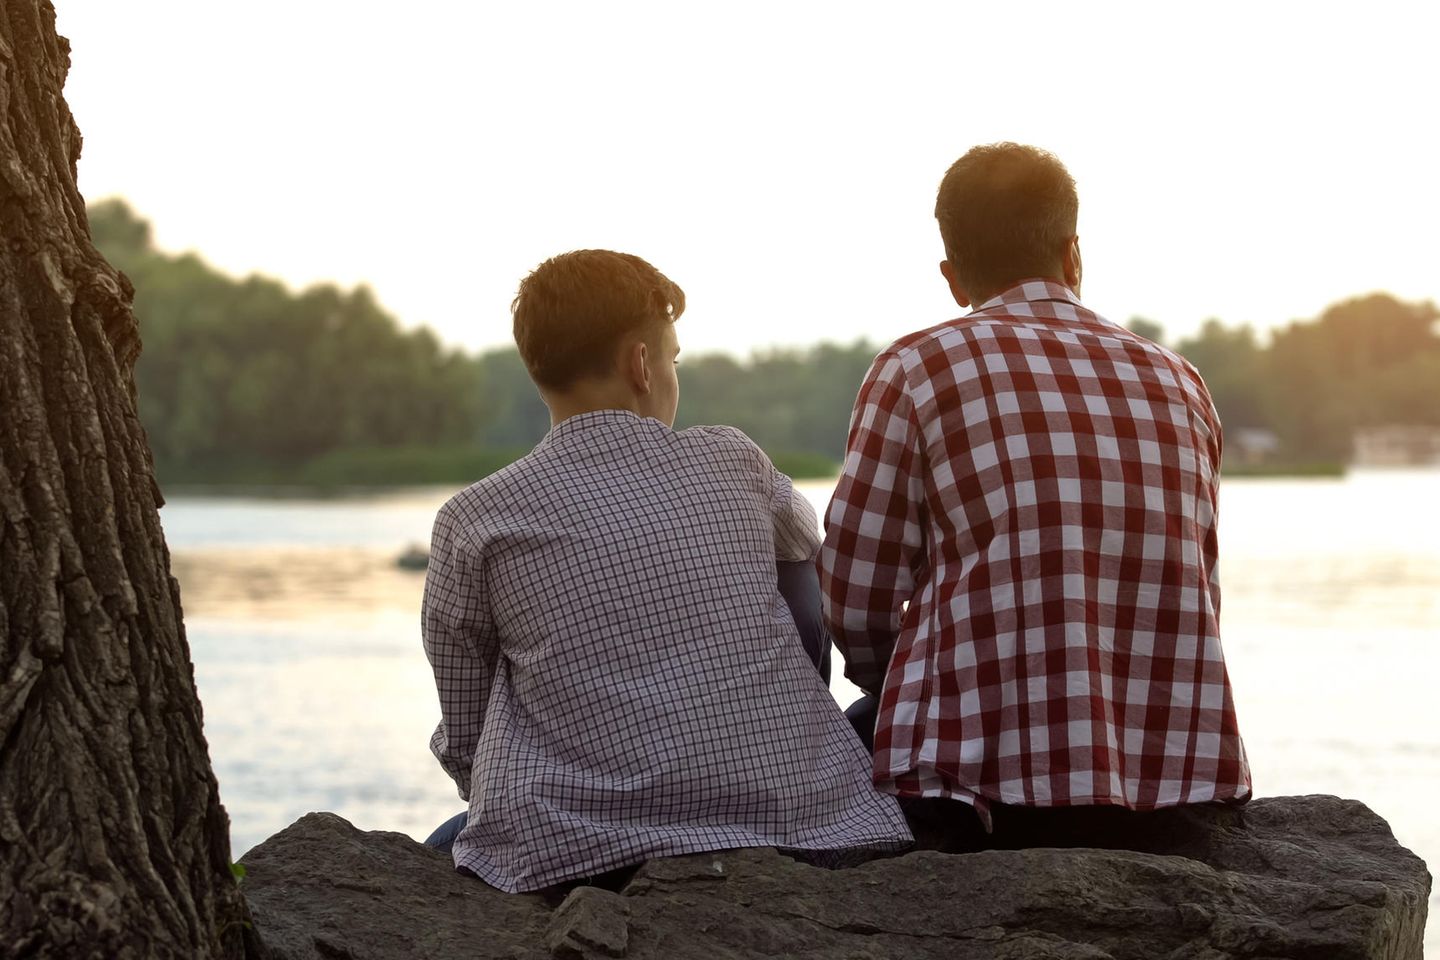 Nicol Ljubic: Vater und sein jugendlicher Sohn sitzen auf einem Baumstamm an einem See